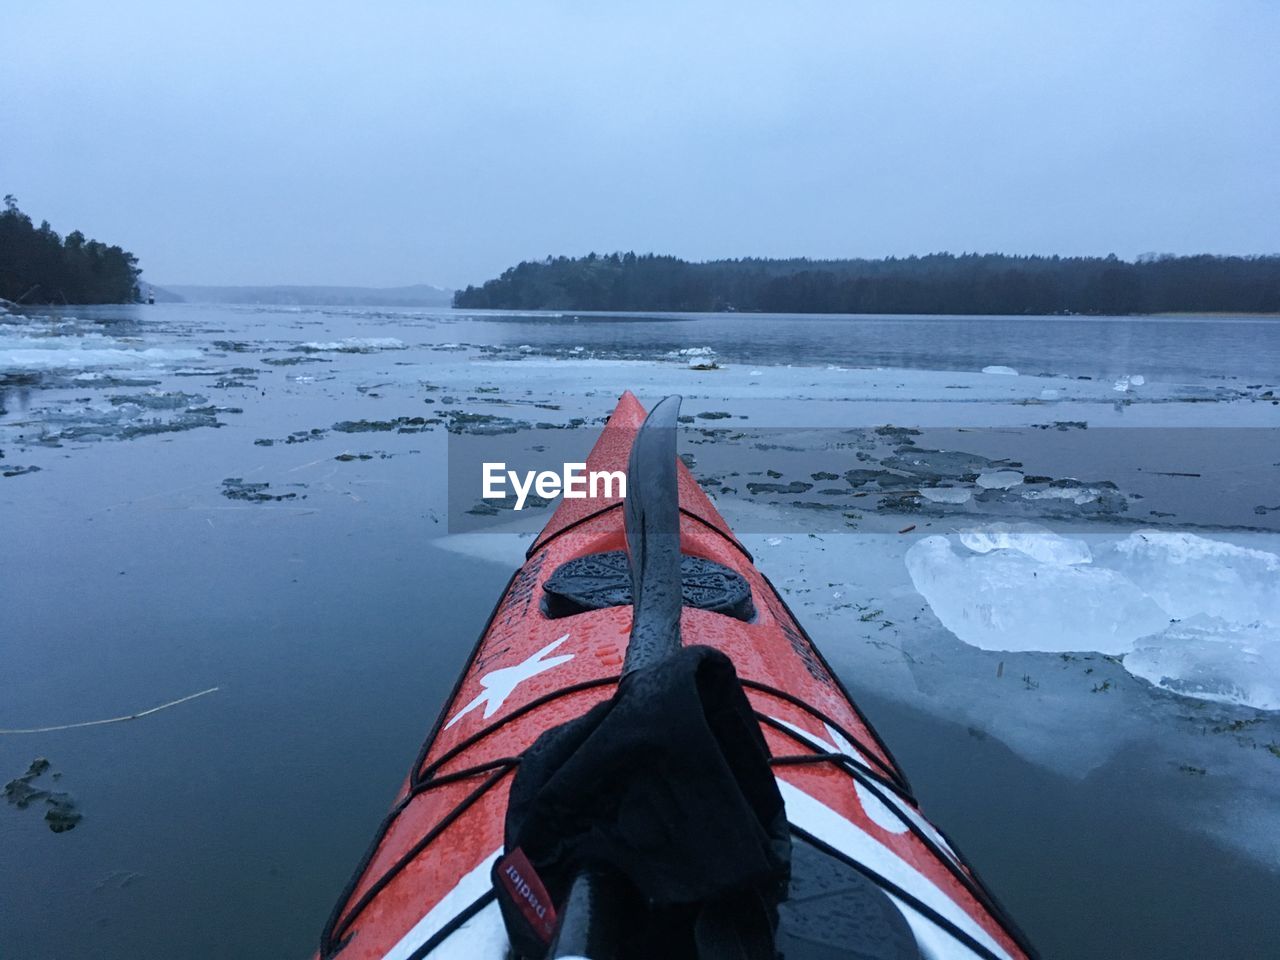 Kayaking in winter